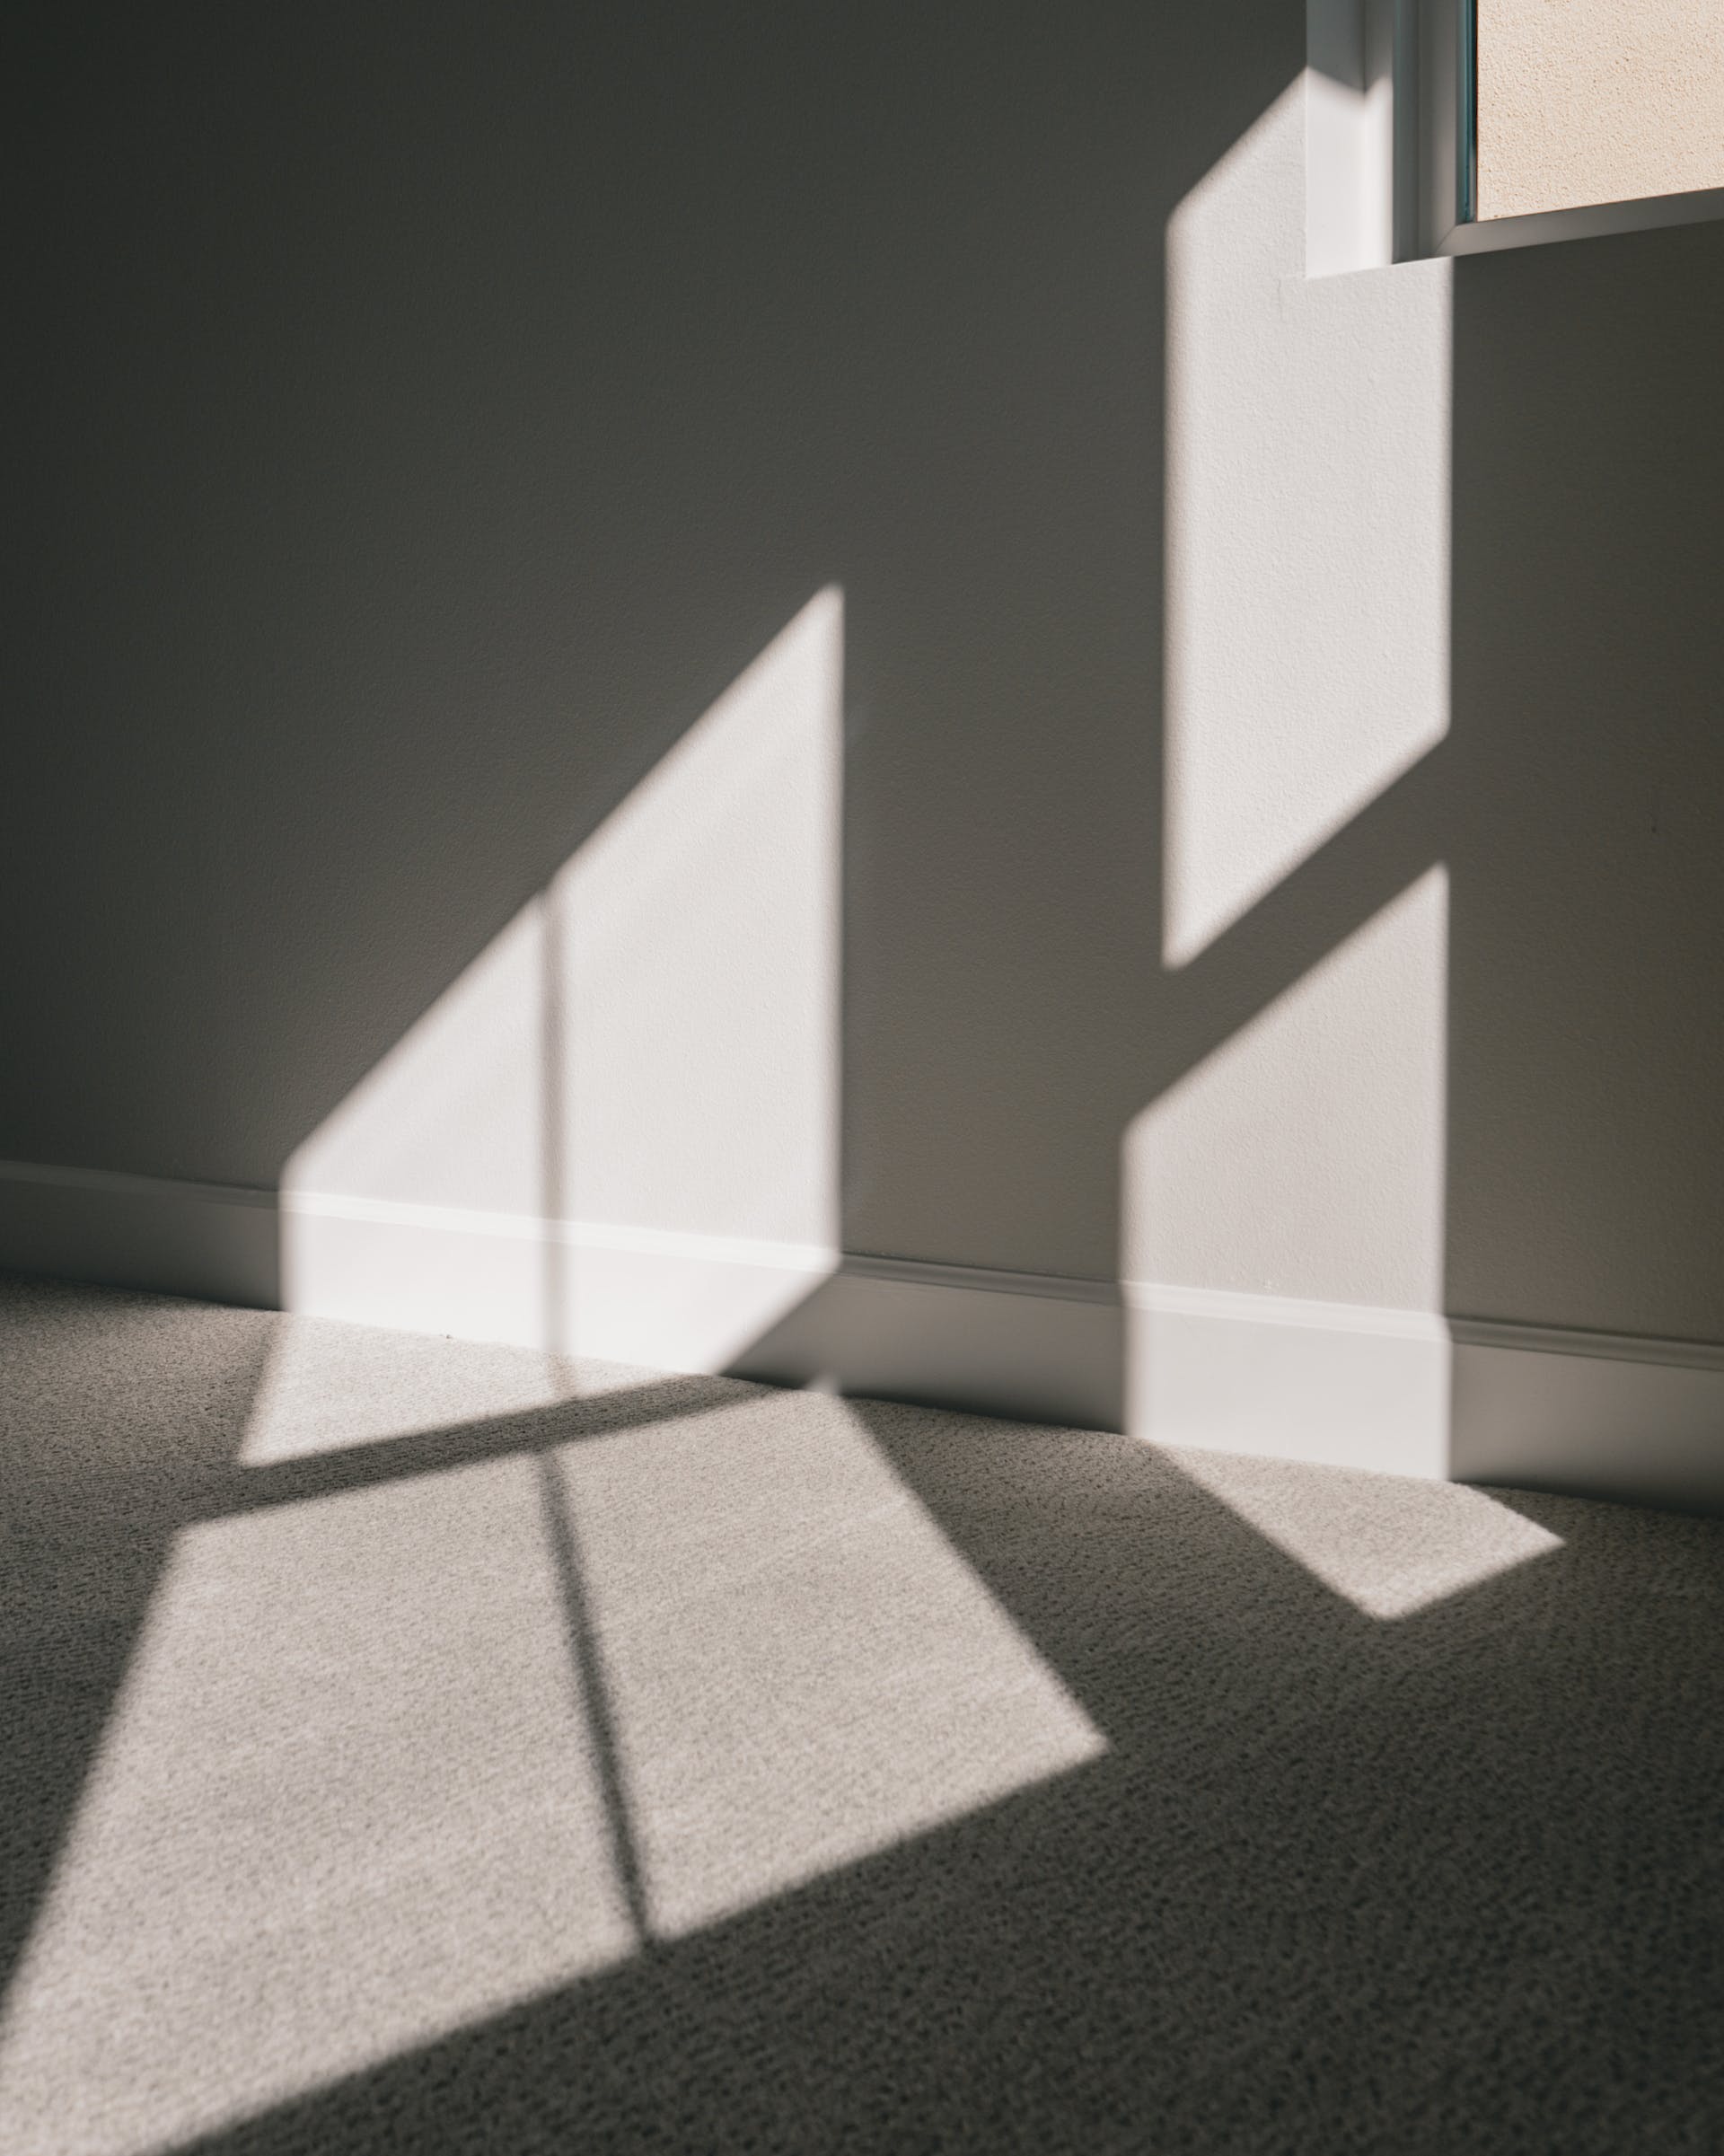 Chambre vide dans un appartement | Source : Pexels